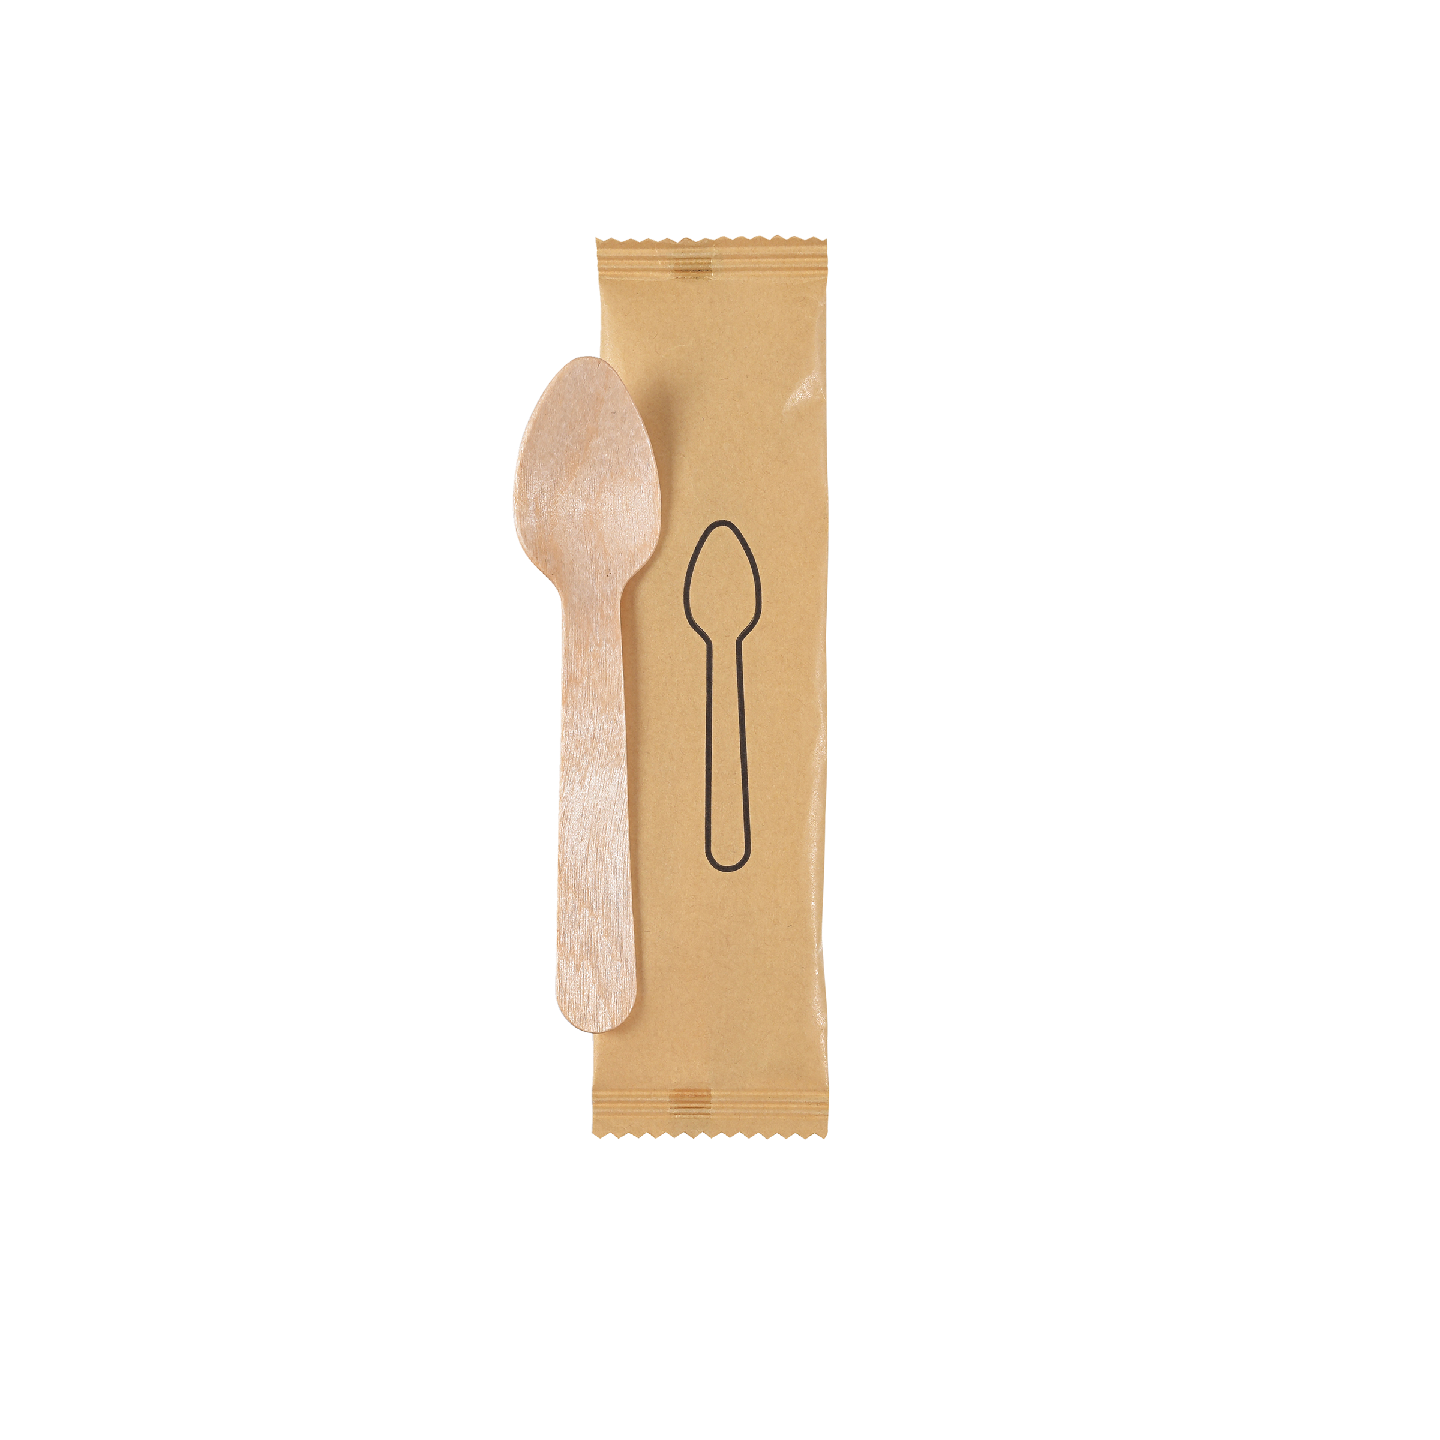 Biopak ecoecho Aterinpakkaus, sisältää vahattu puukahvilusikka 110mm